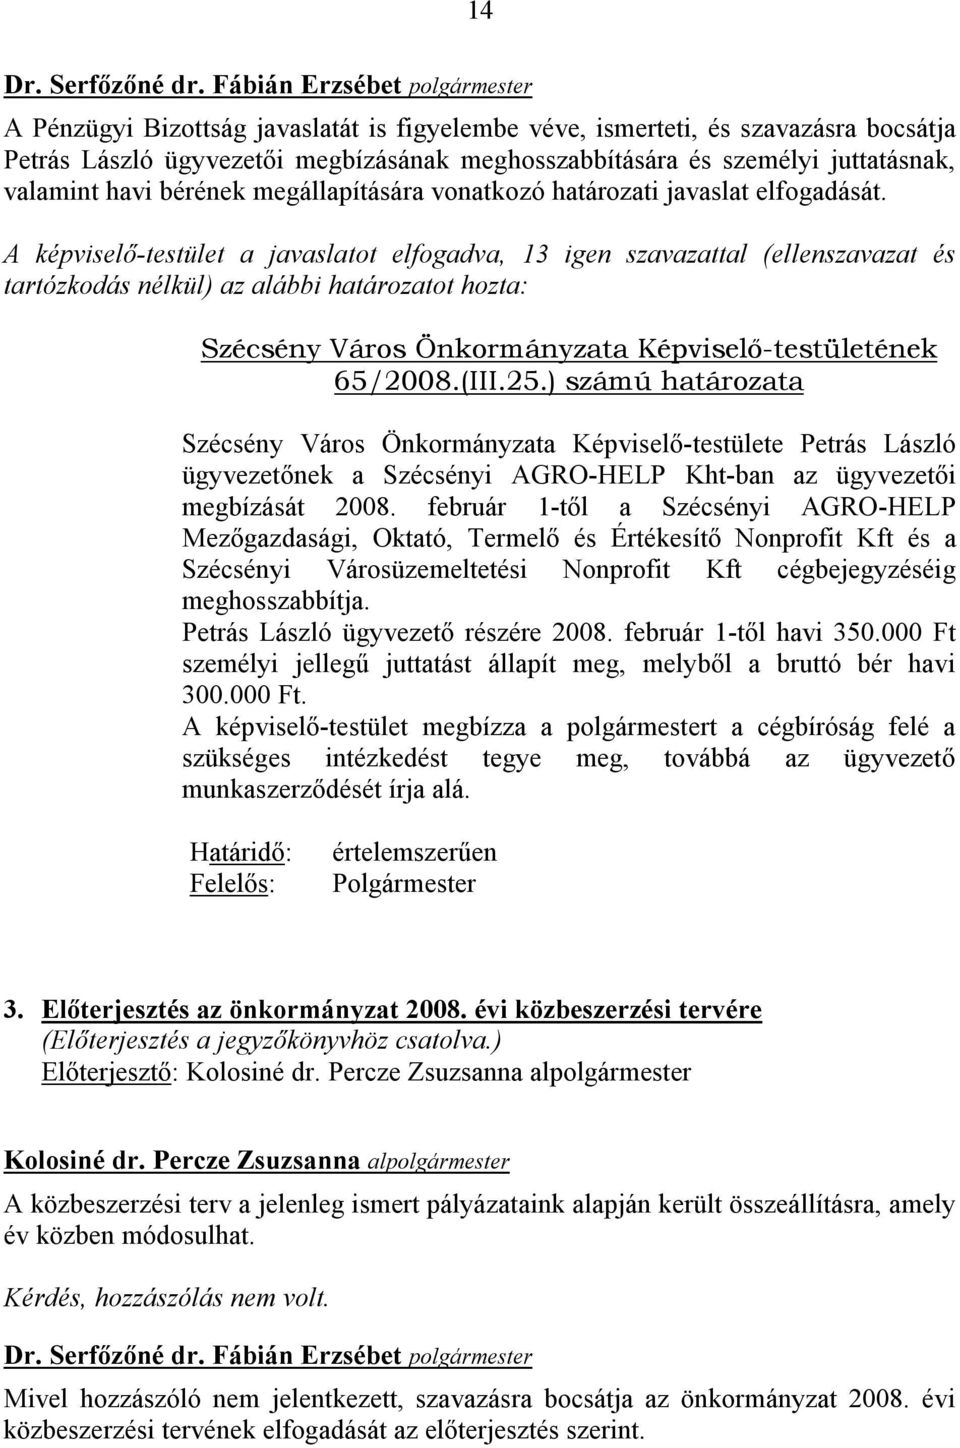 A képviselő-testület a javaslatot elfogadva, 13 igen szavazattal (ellenszavazat és tartózkodás nélkül) az alábbi határozatot hozta: Szécsény Város Önkormányzata Képviselő-testületének 65/2008.(III.25.